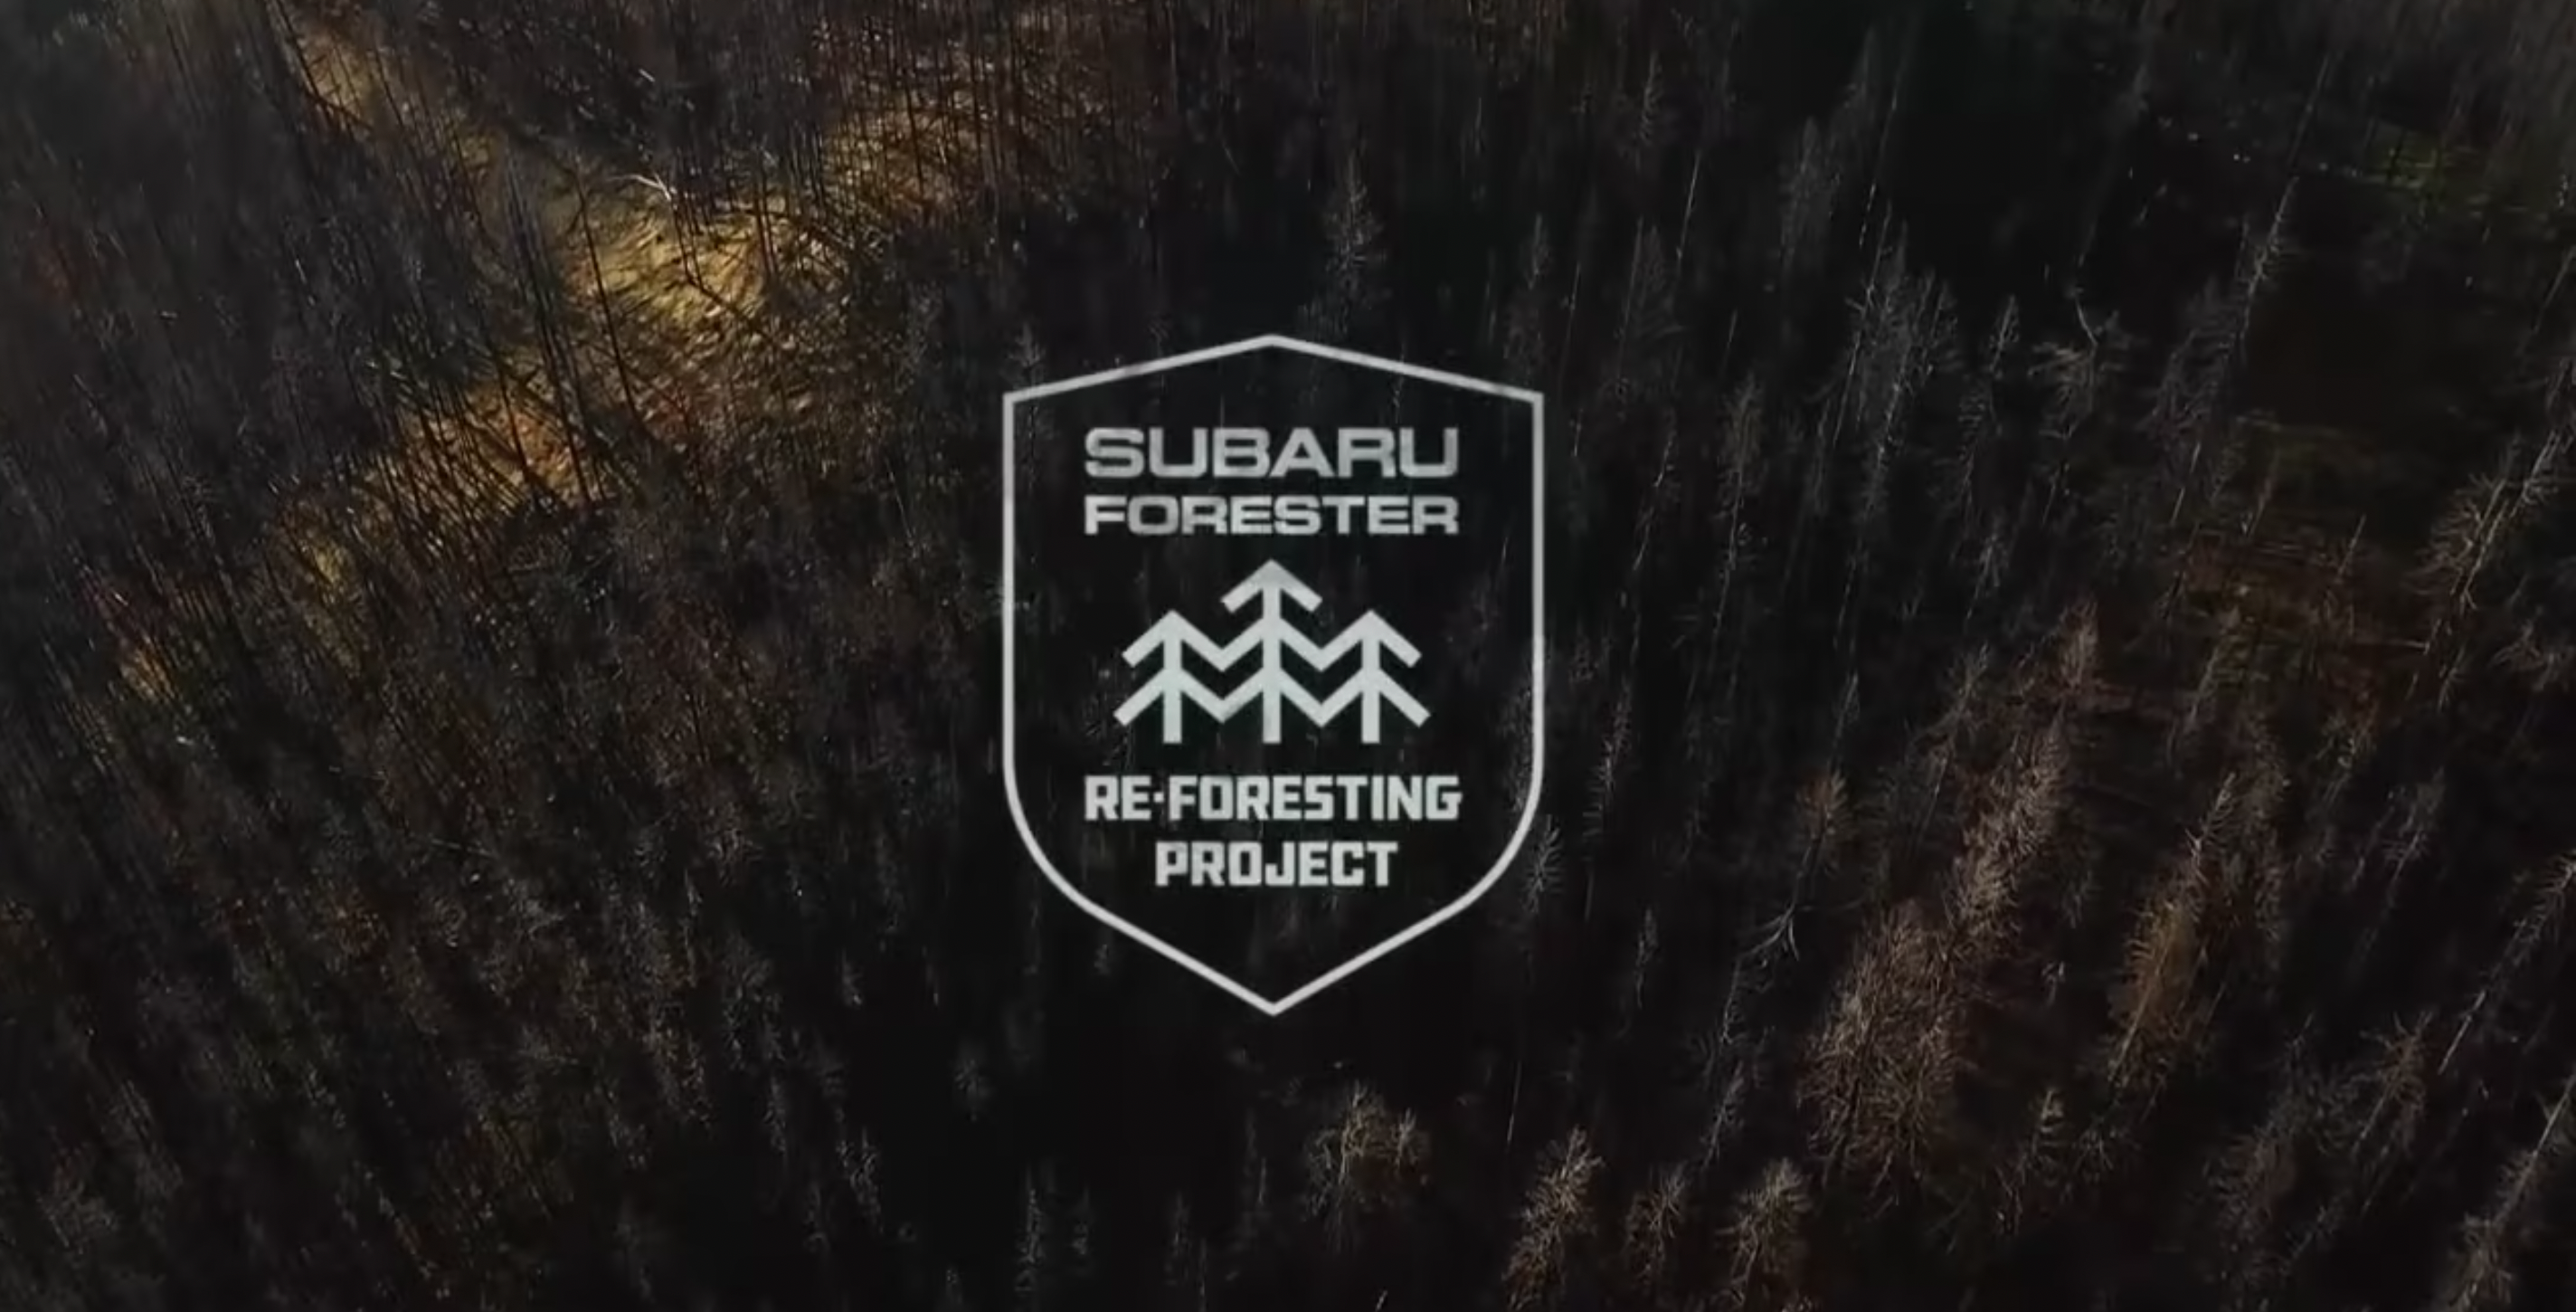 Subaru “Reforesting” – AICP